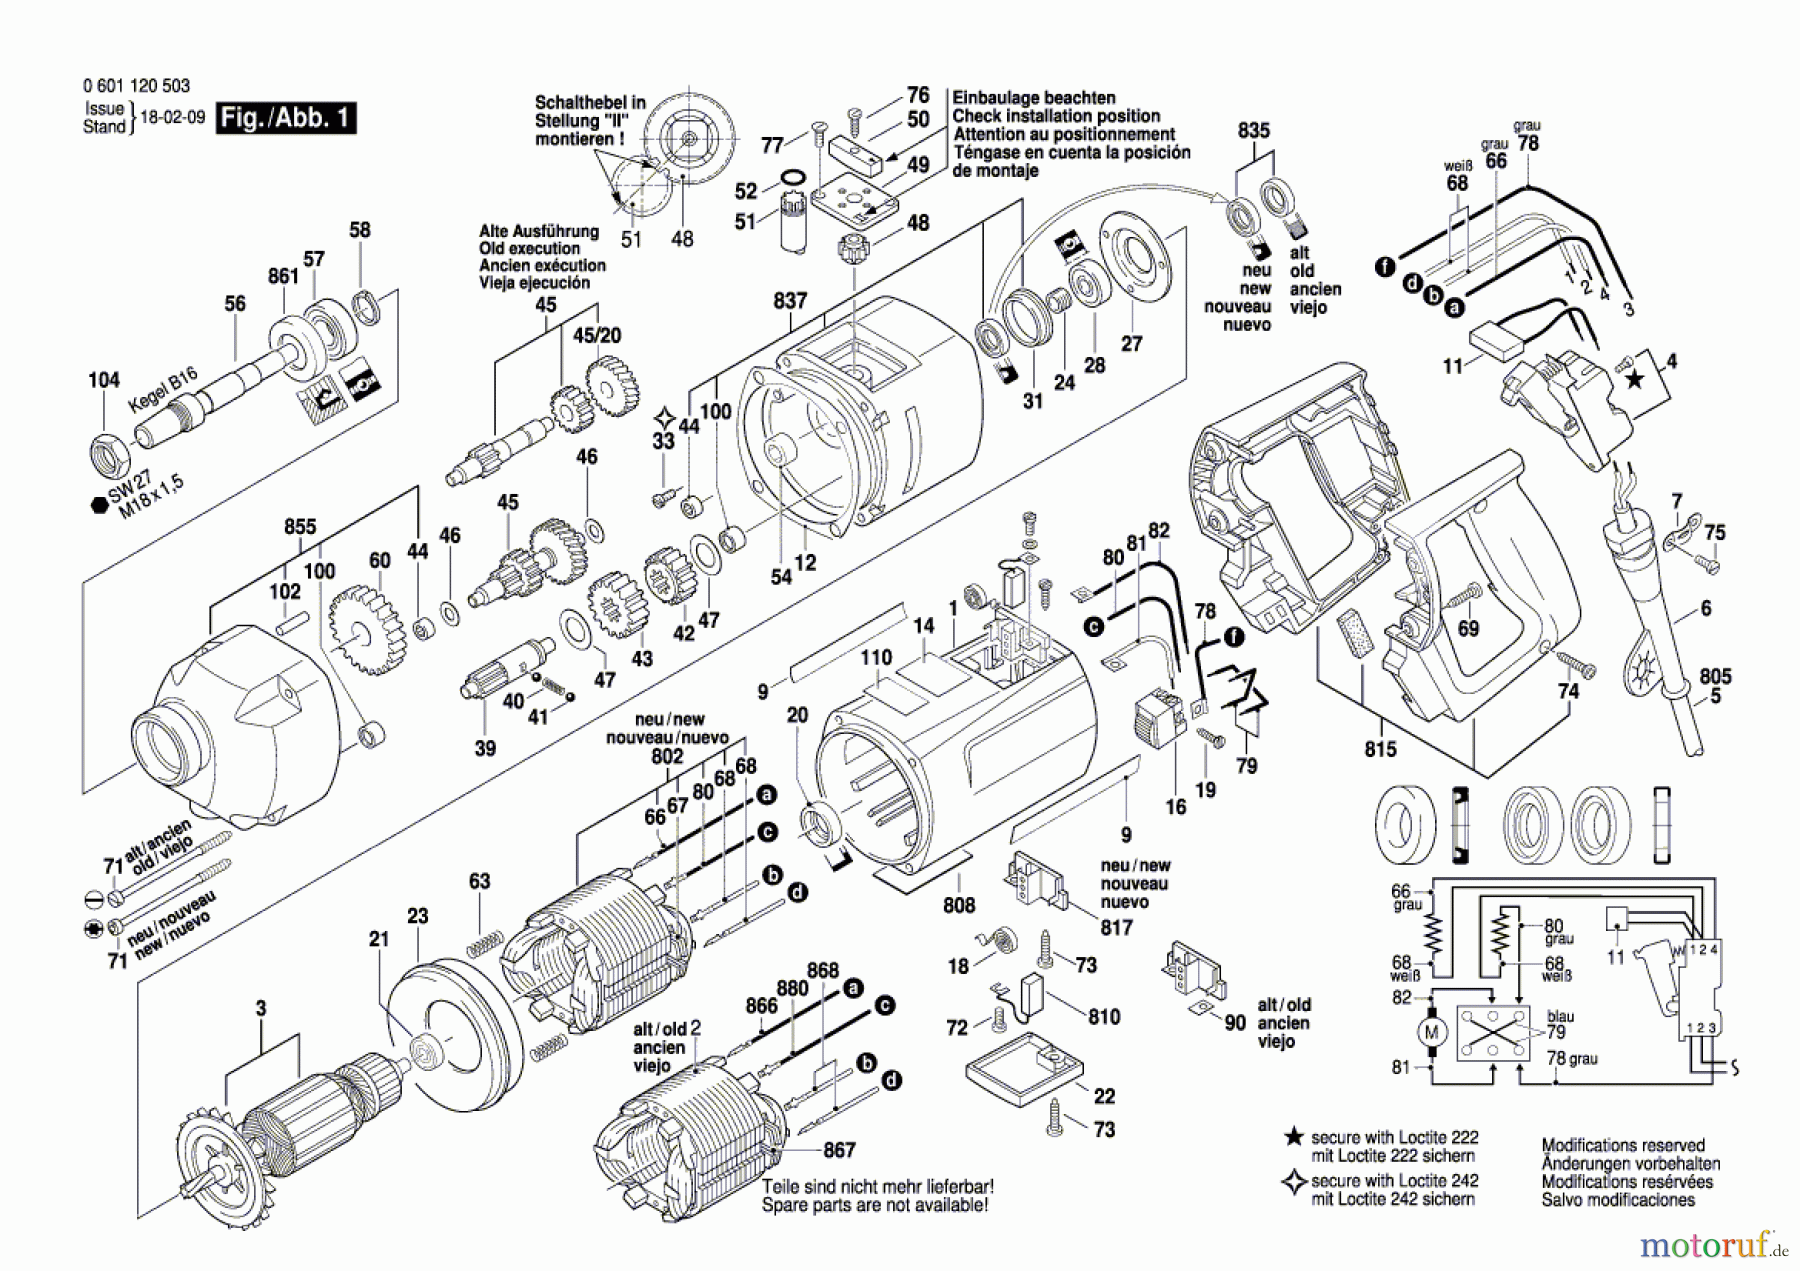  Bosch Werkzeug Bohrmaschine GBM 16-2 RE Seite 1